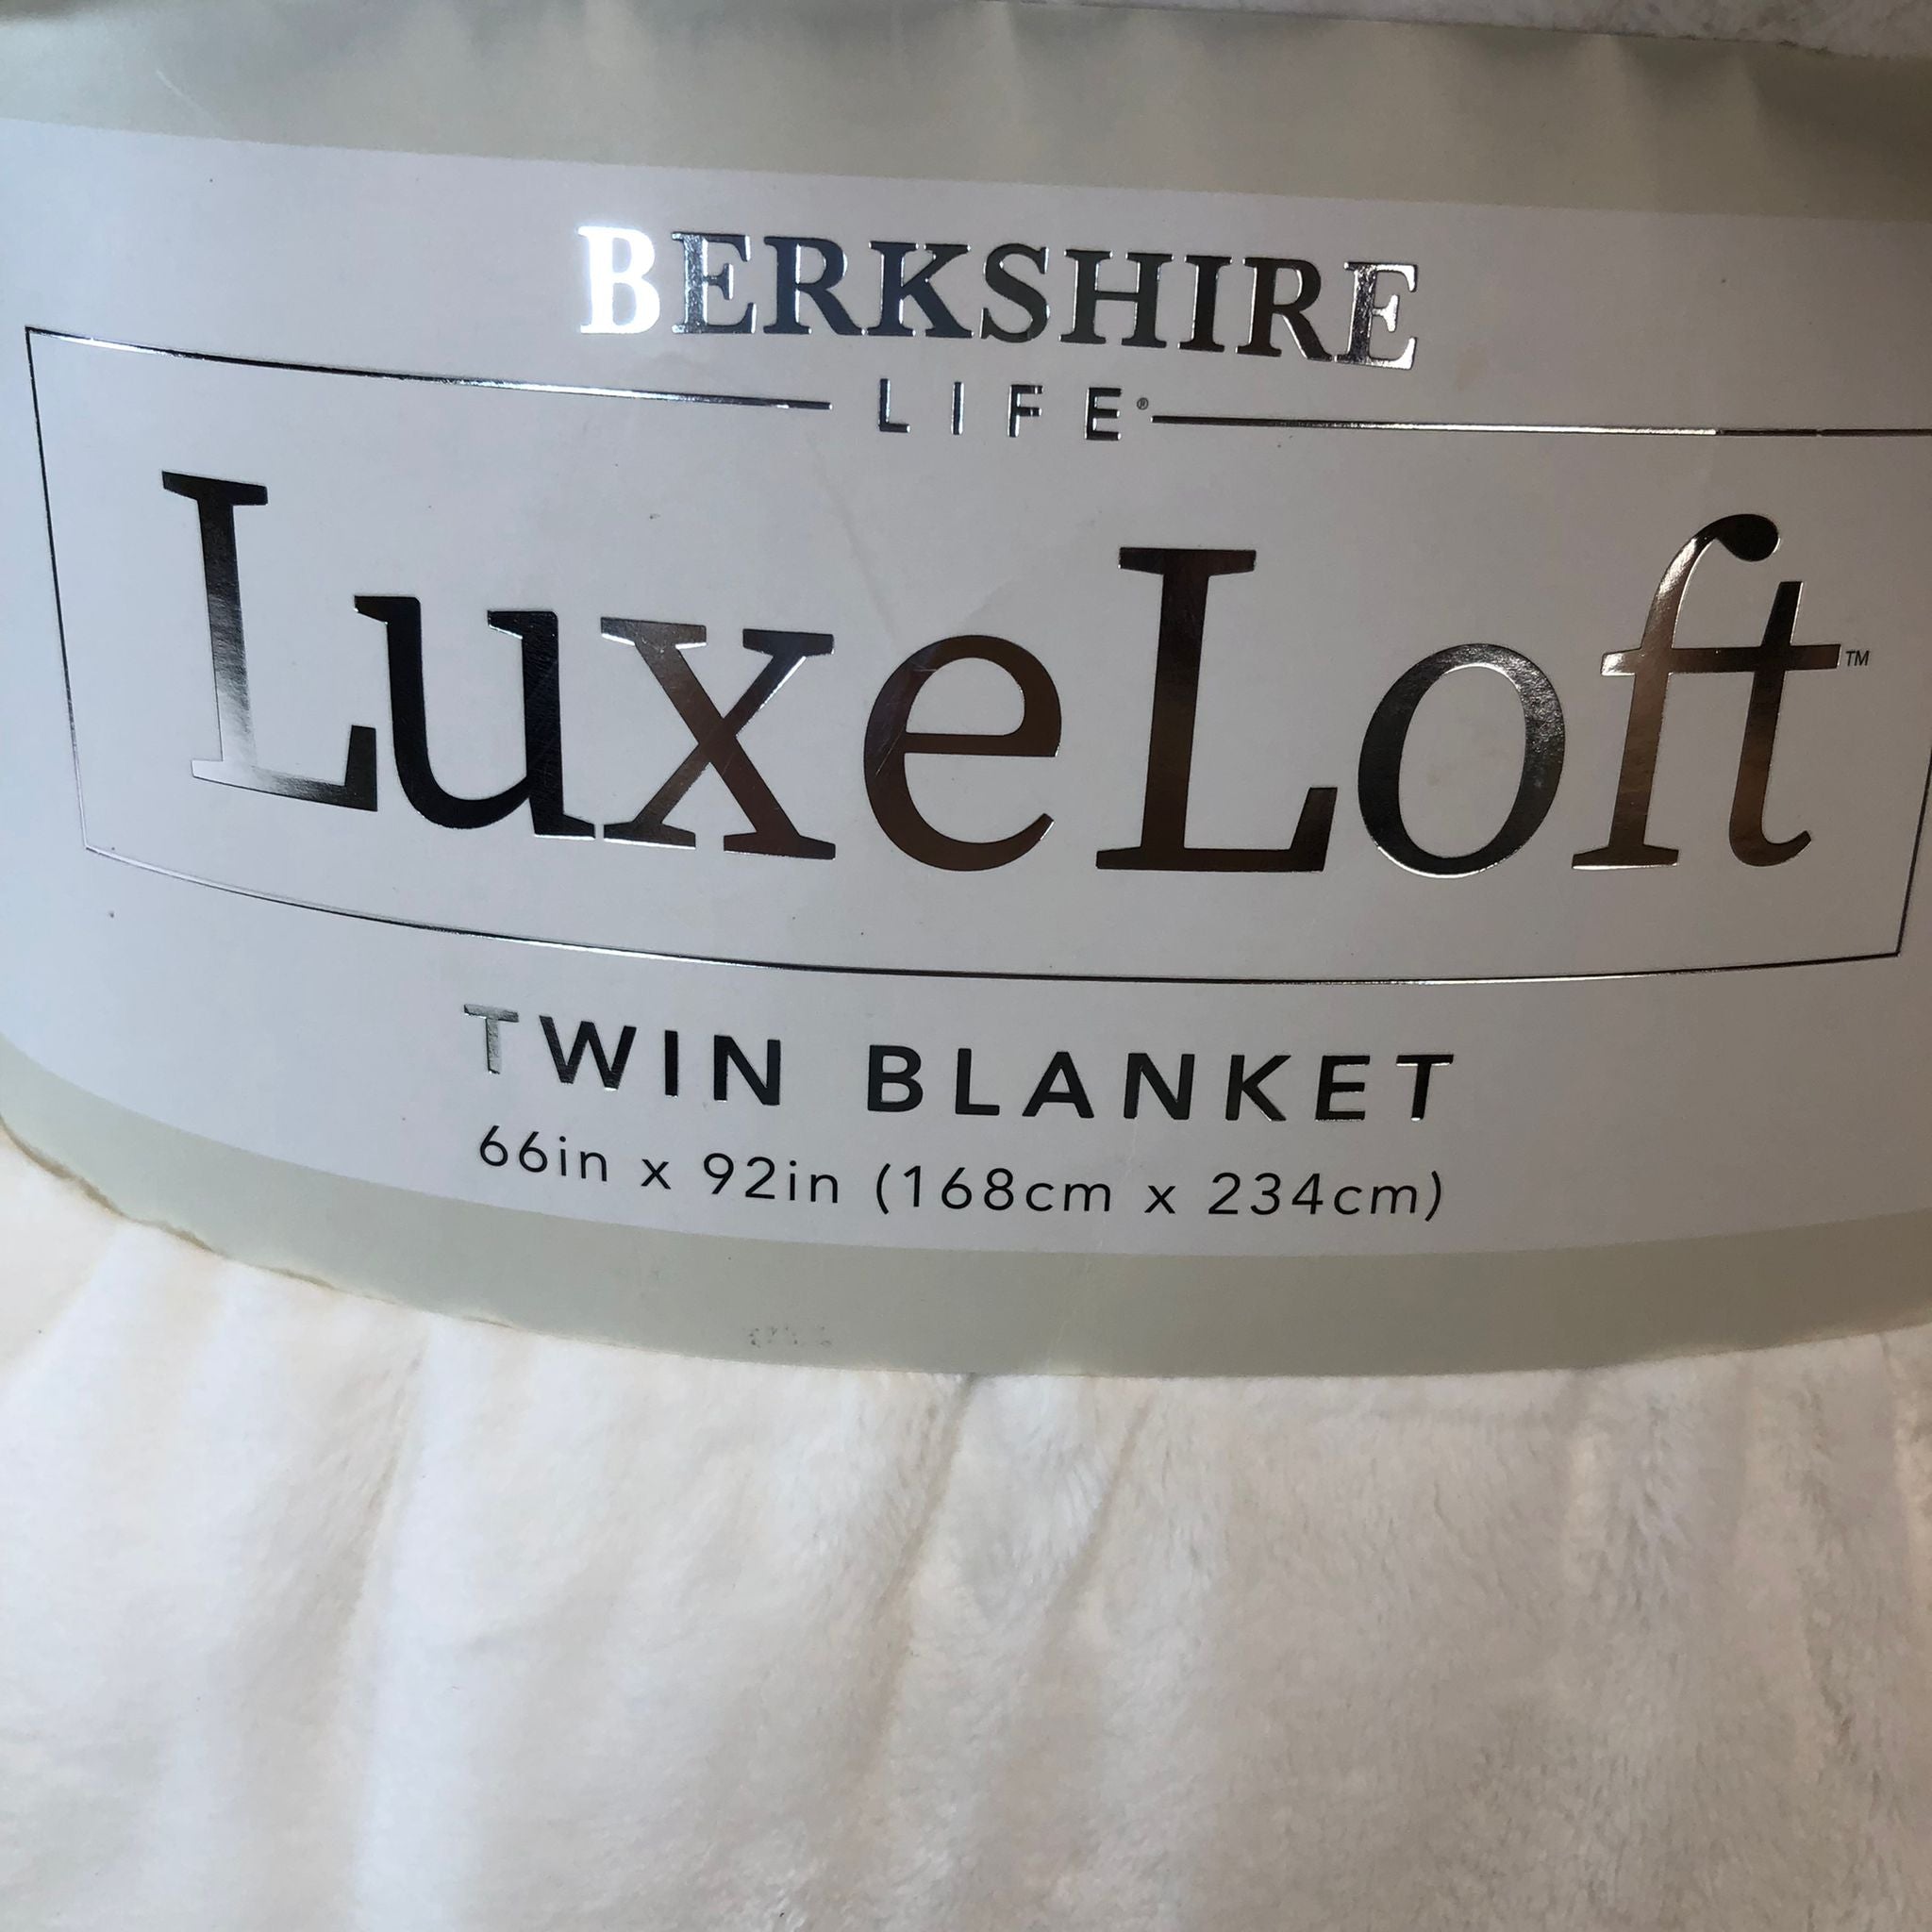 As is Berkshire Life LuxeLoft Blanket, Twin